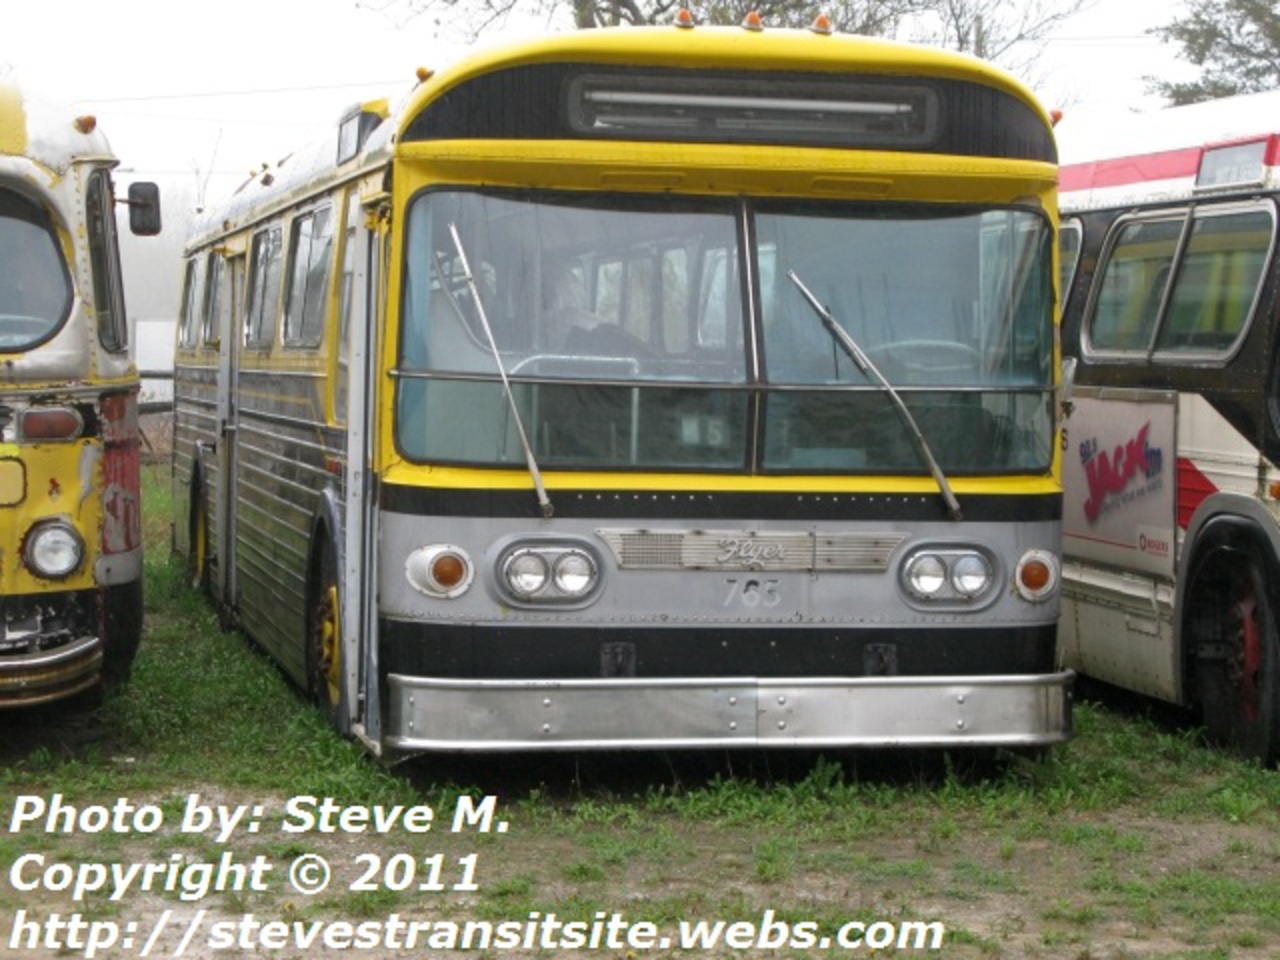 HSR #765, a 1972 Flyer E700A trolleybus - Steve's Transit Site